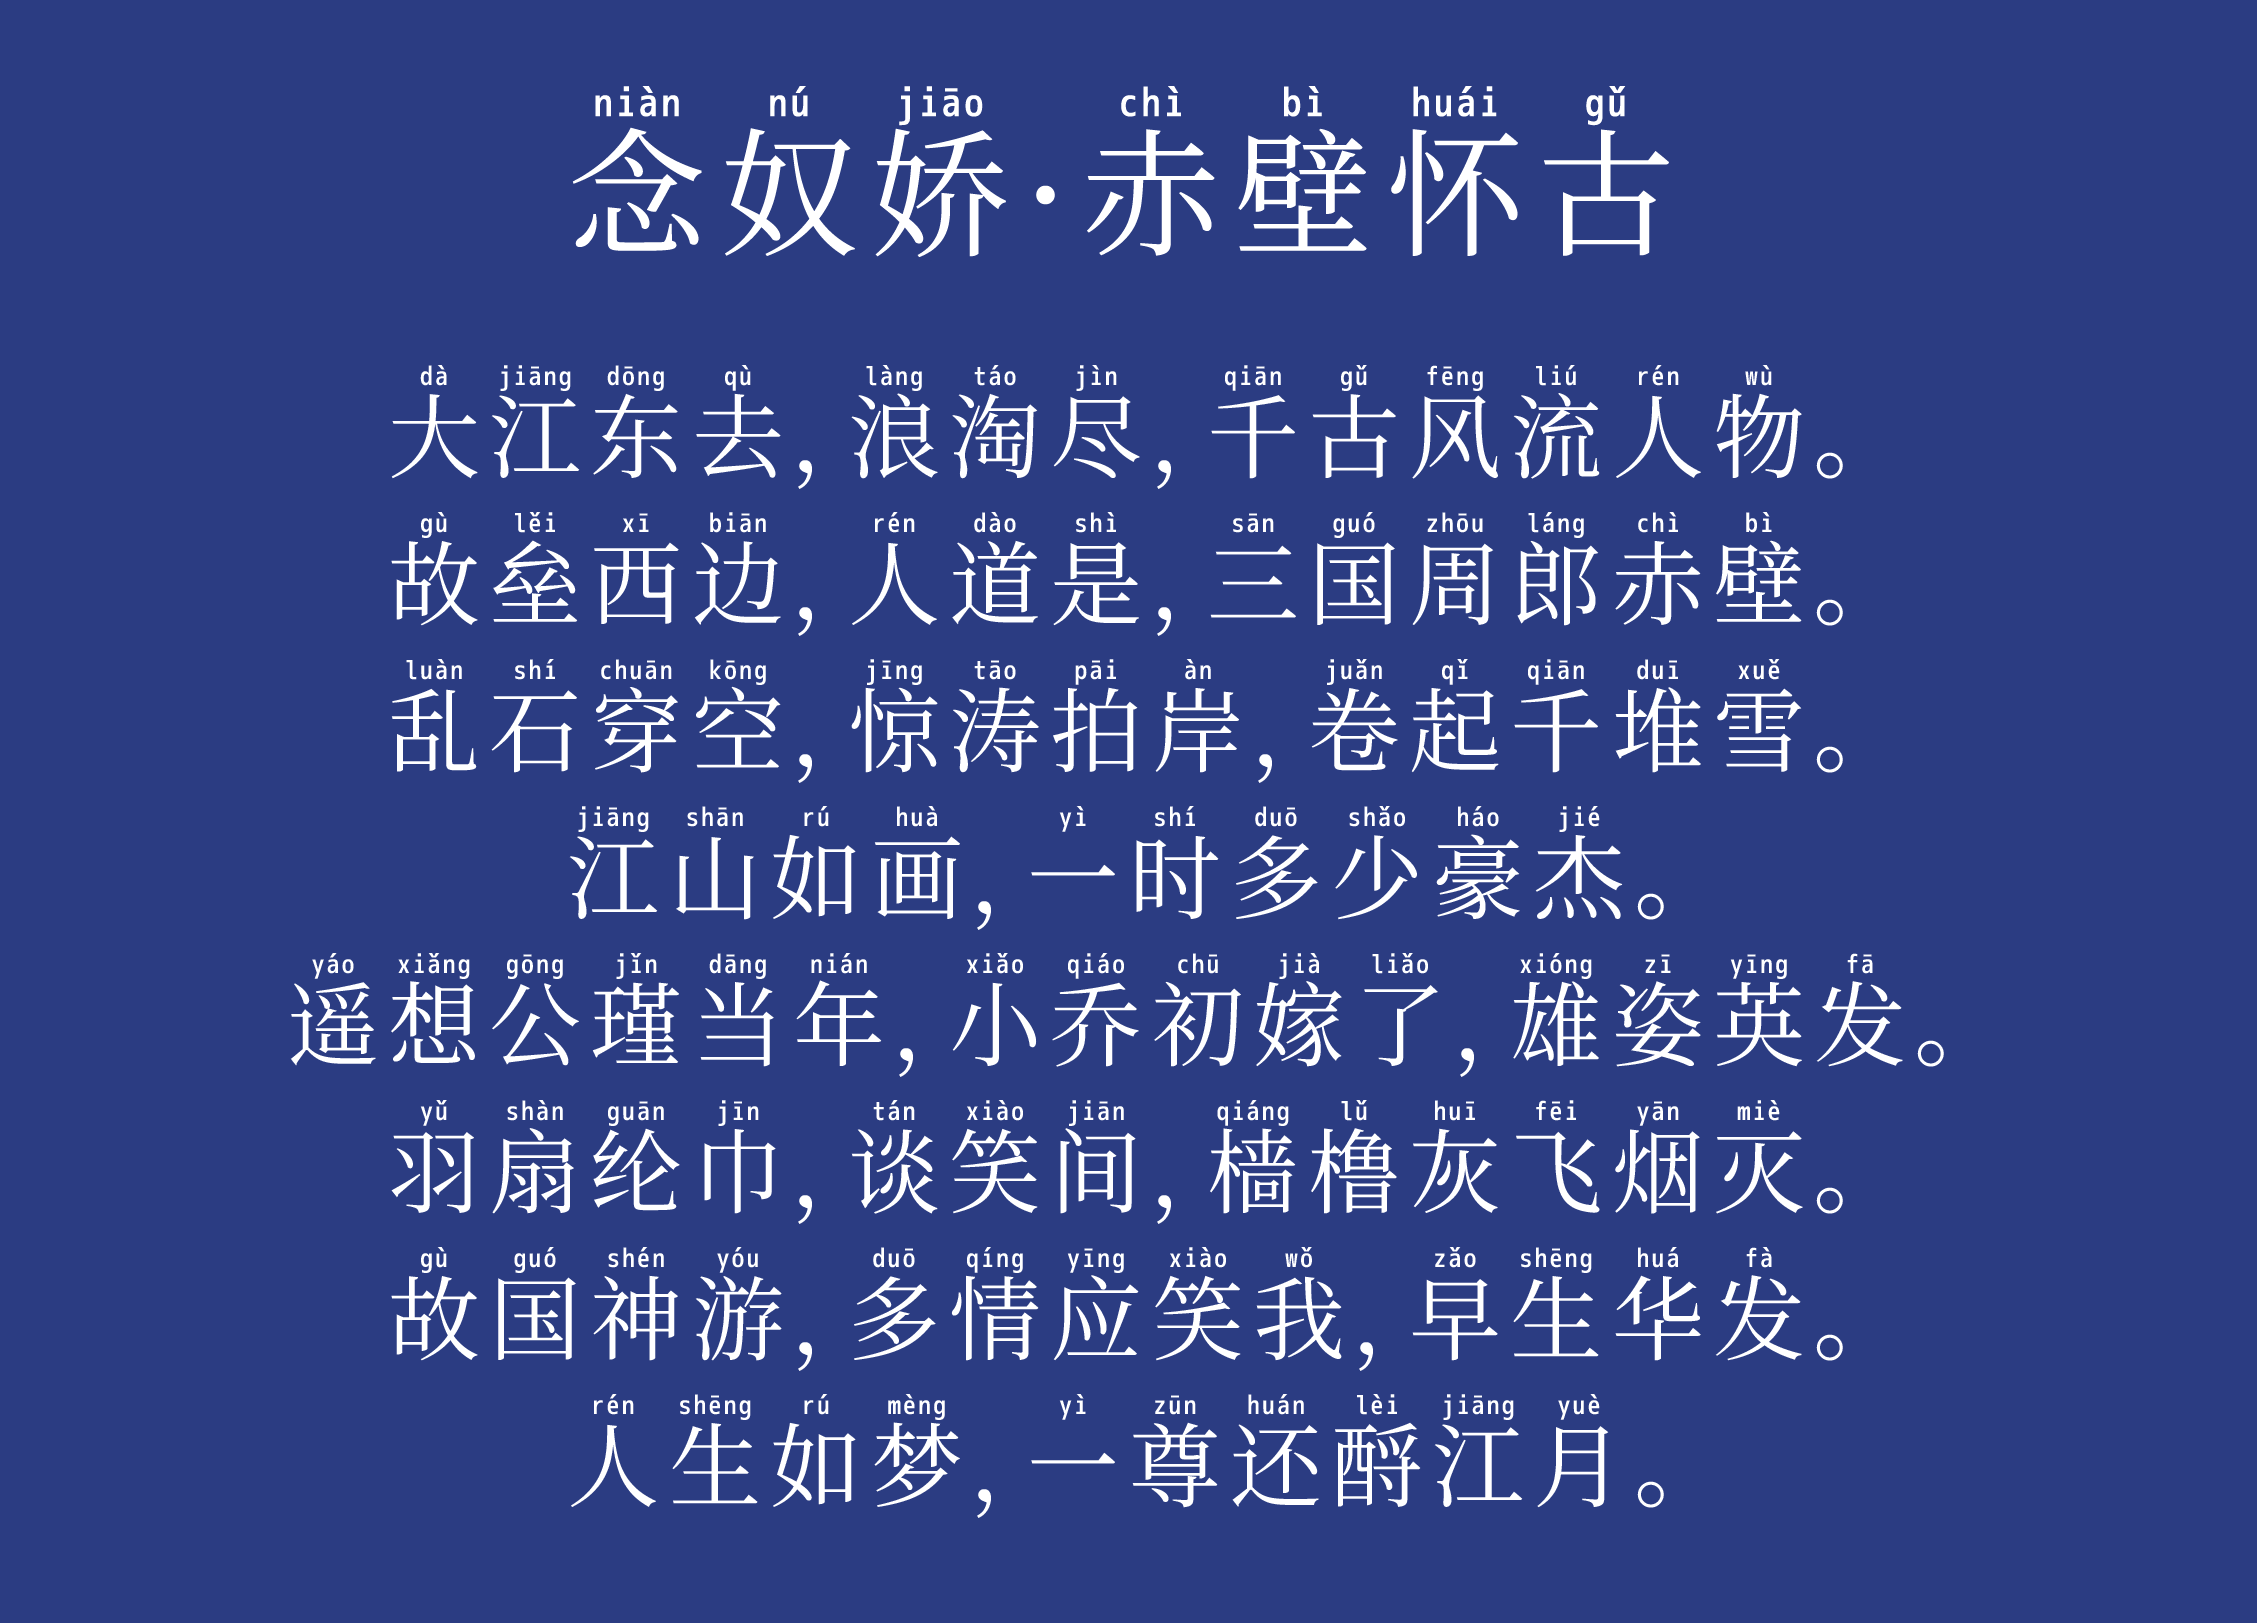 中文字体 免费可商用 免费字体 字体下载